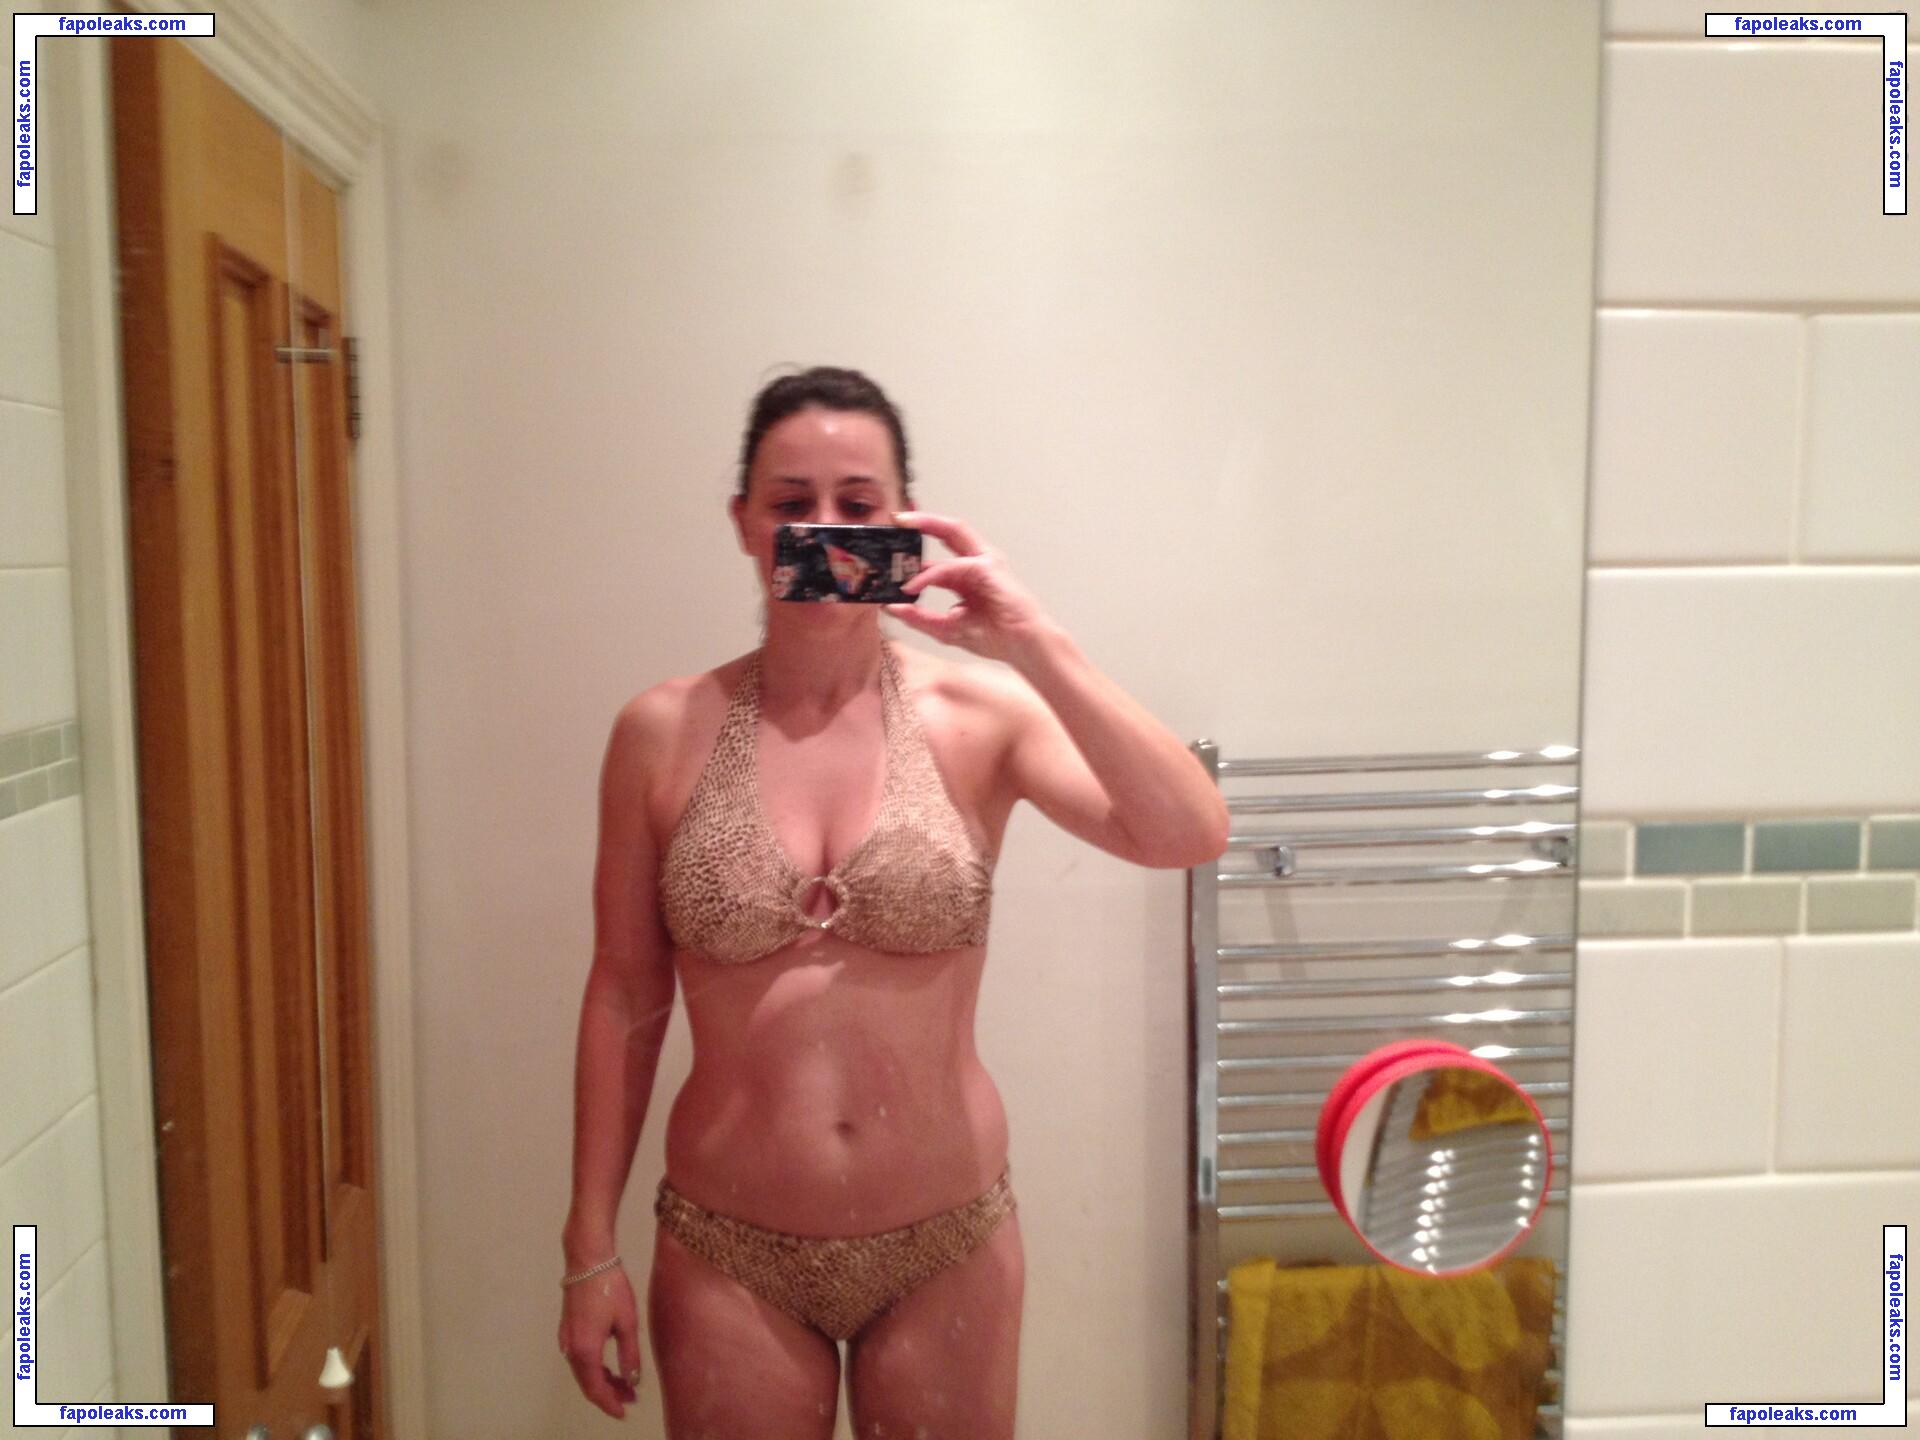 Jill Halfpenny / jillhalfpennyfans nude photo #0033 from OnlyFans